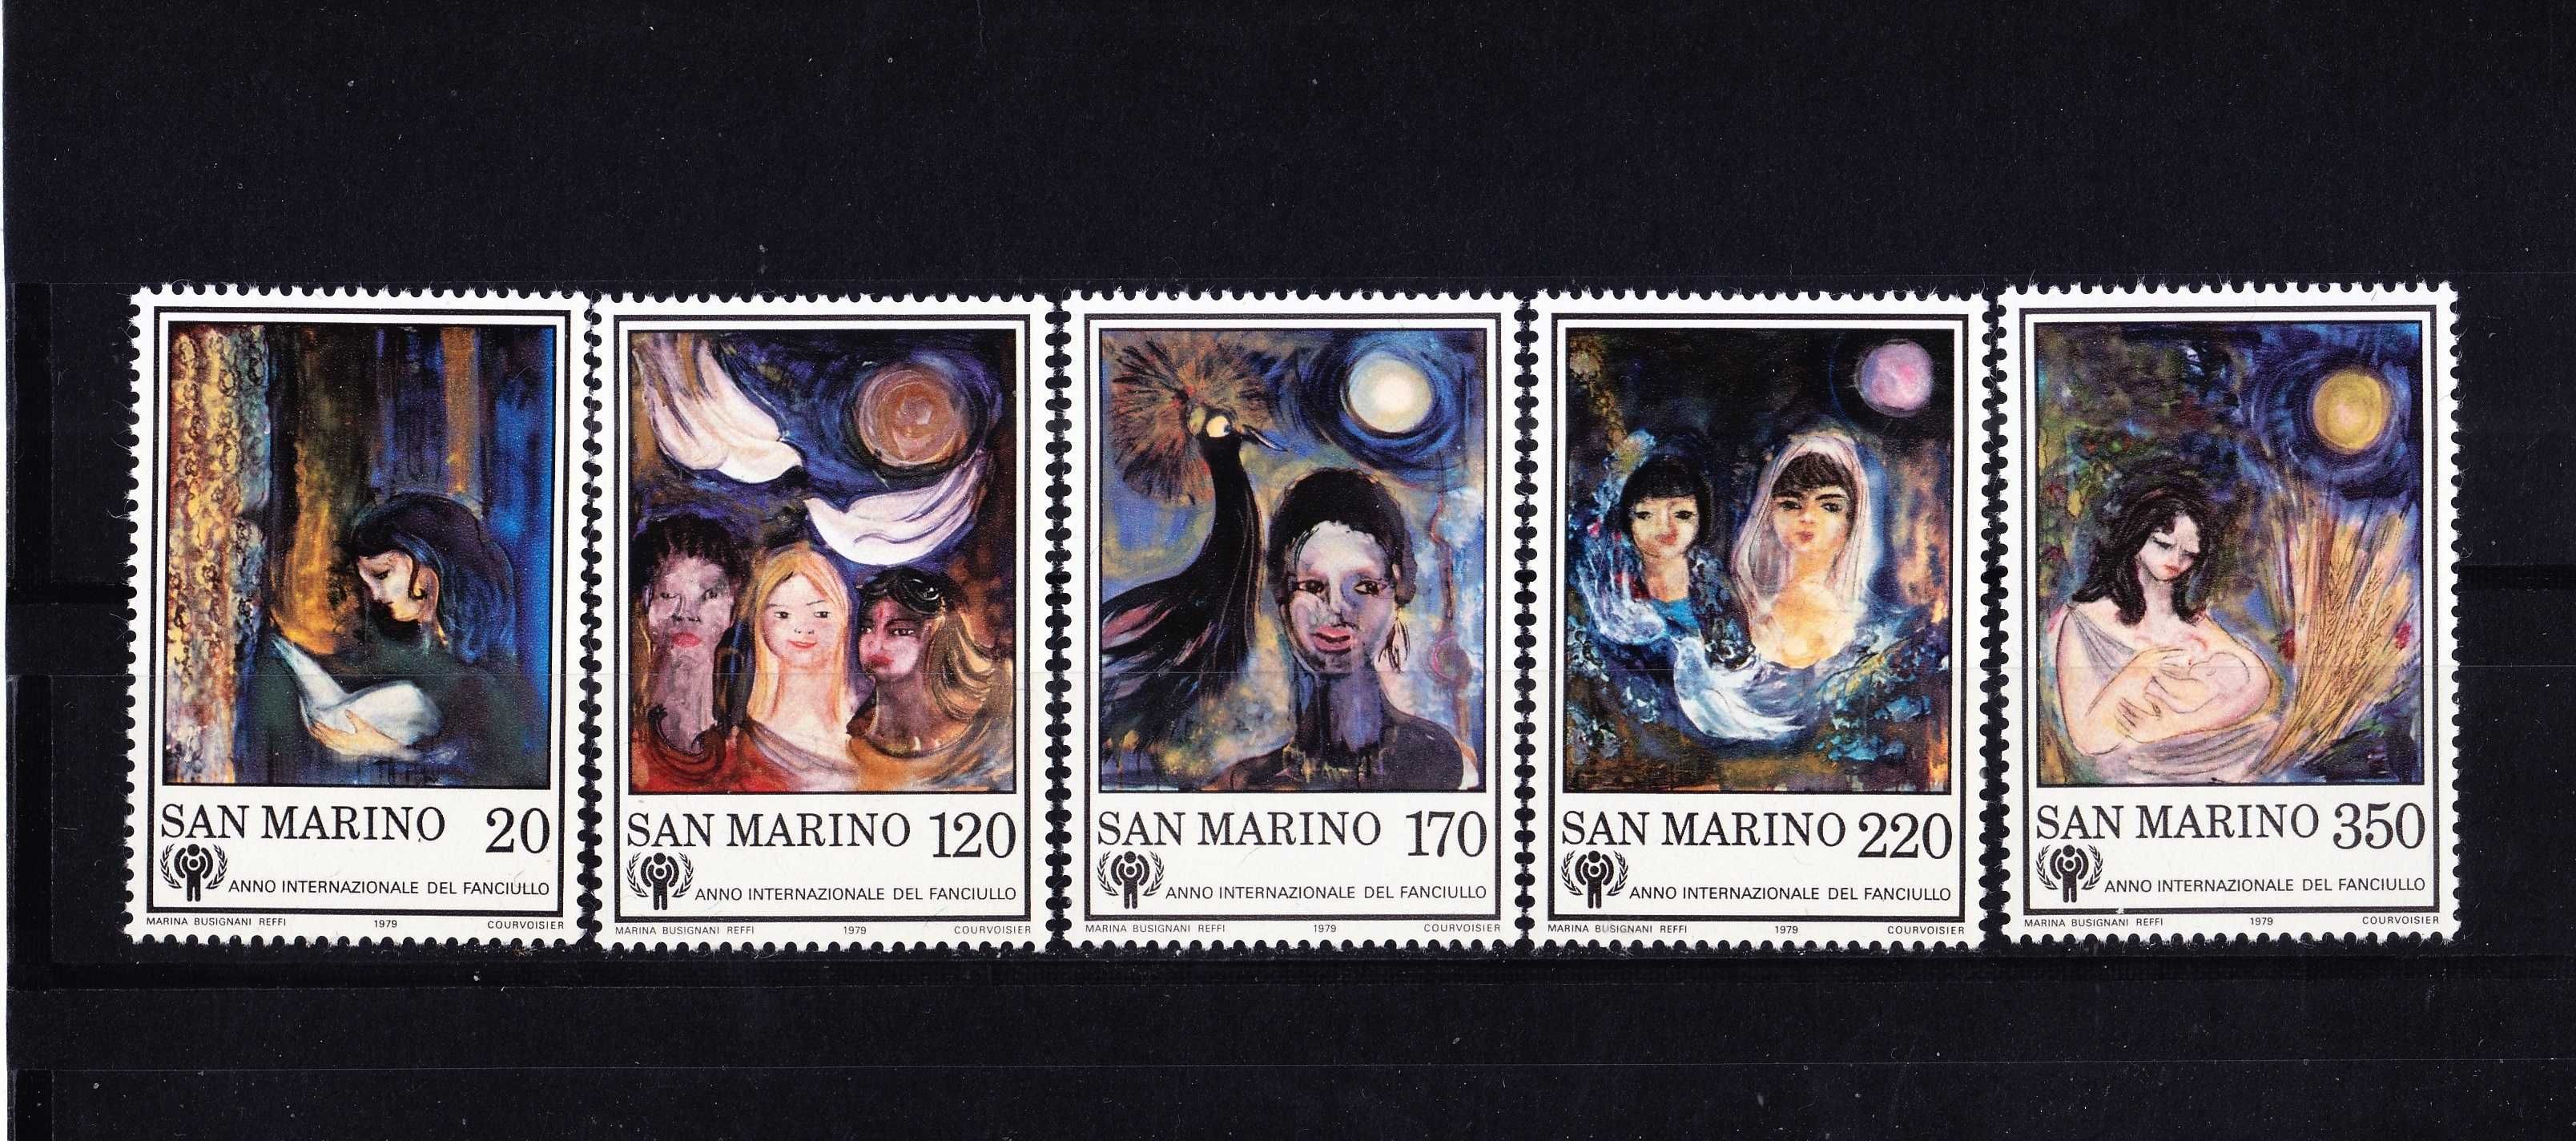 1979- São Marino - Selos novos (MNH)